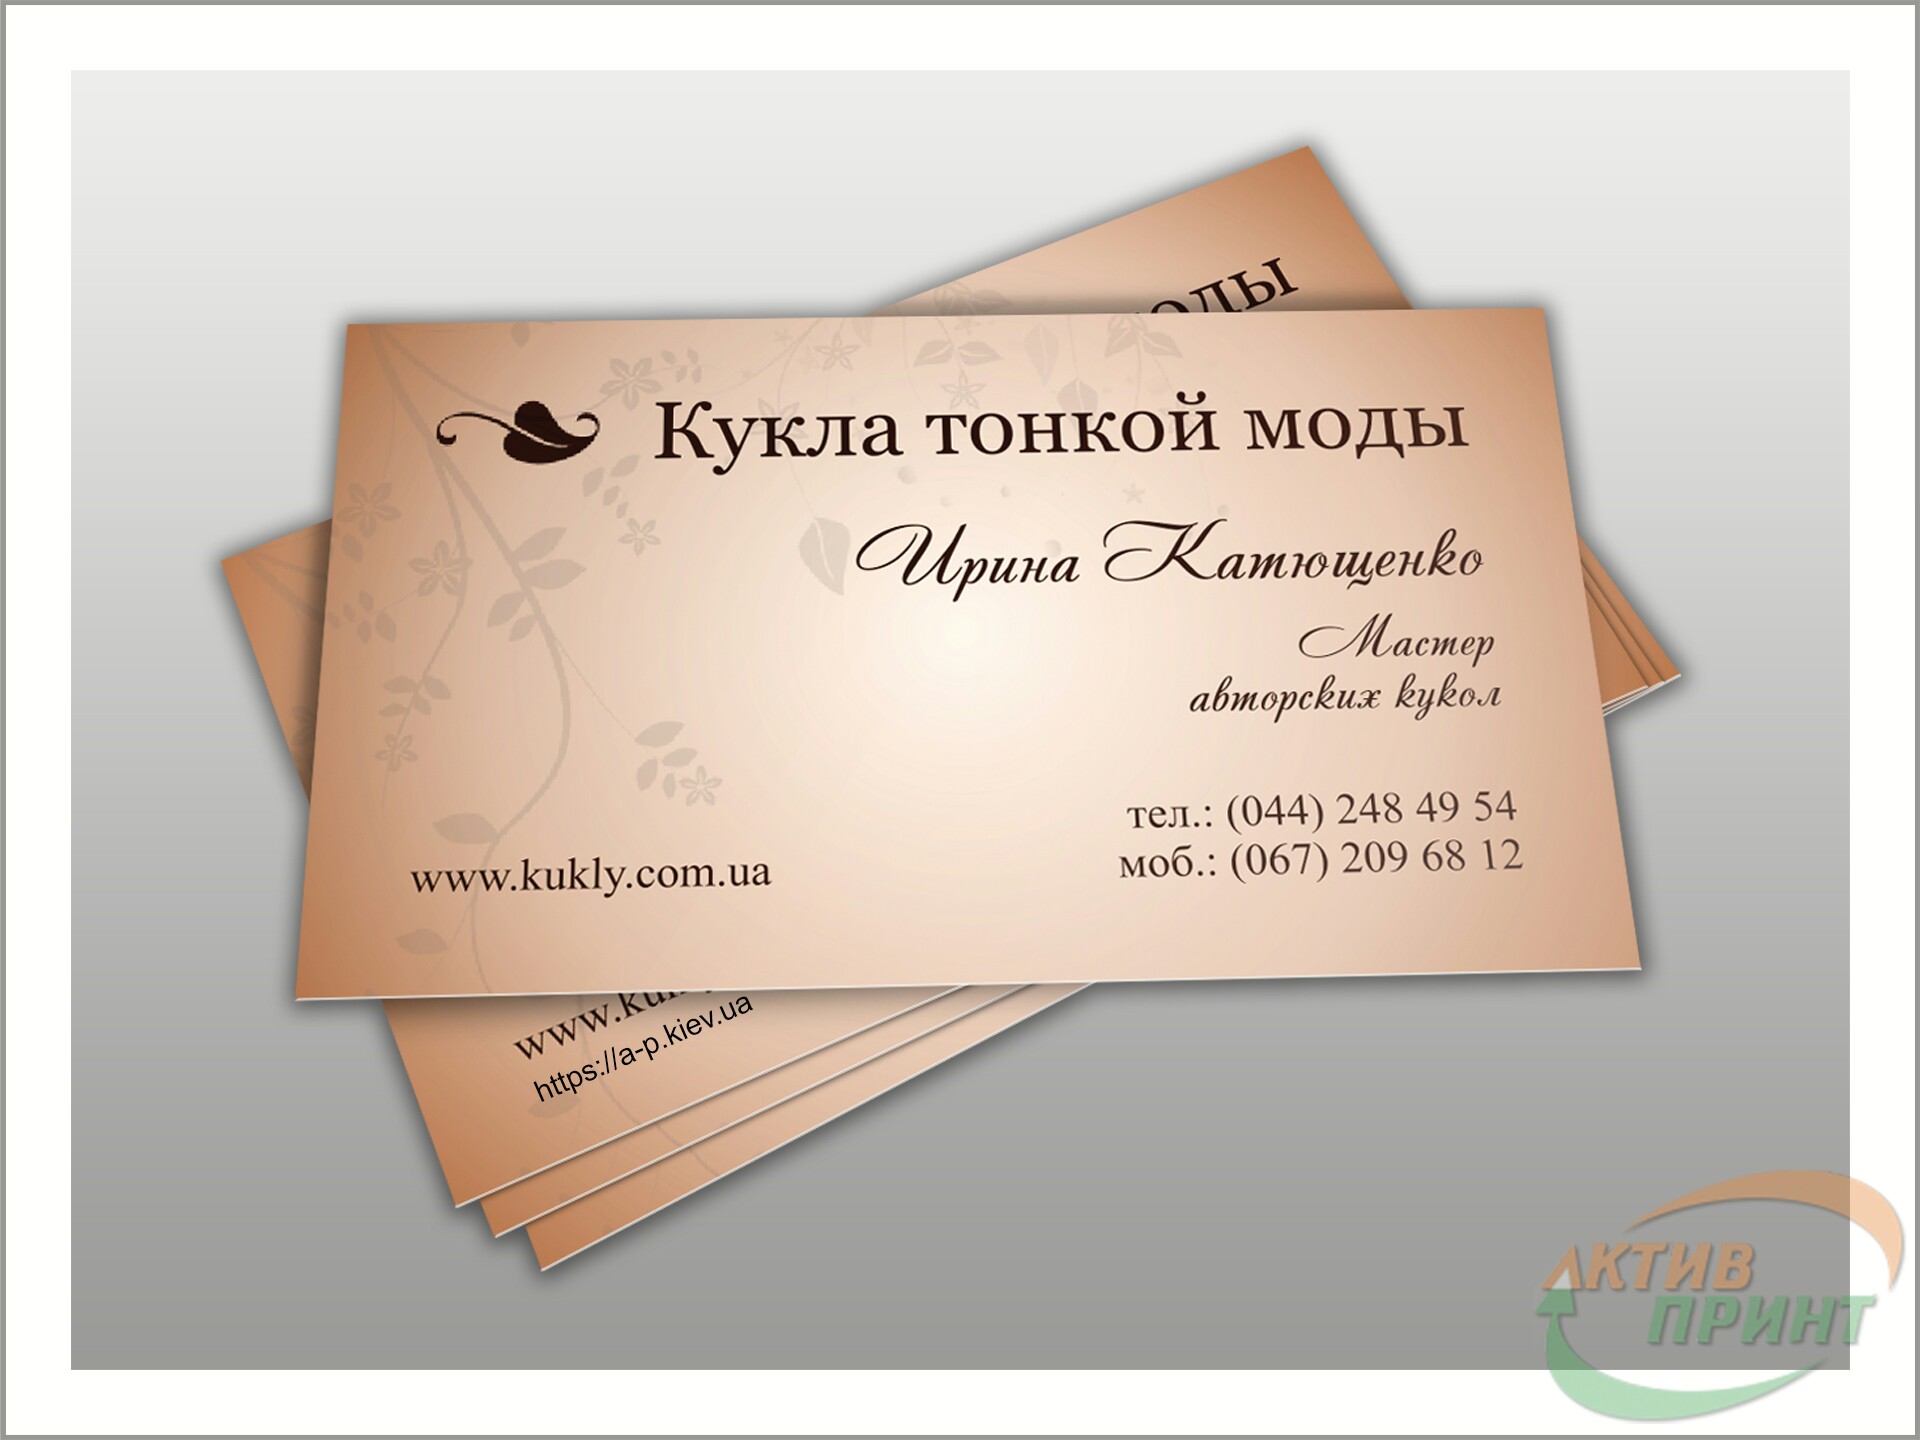 Приклад надрукованих візиток з дизайном